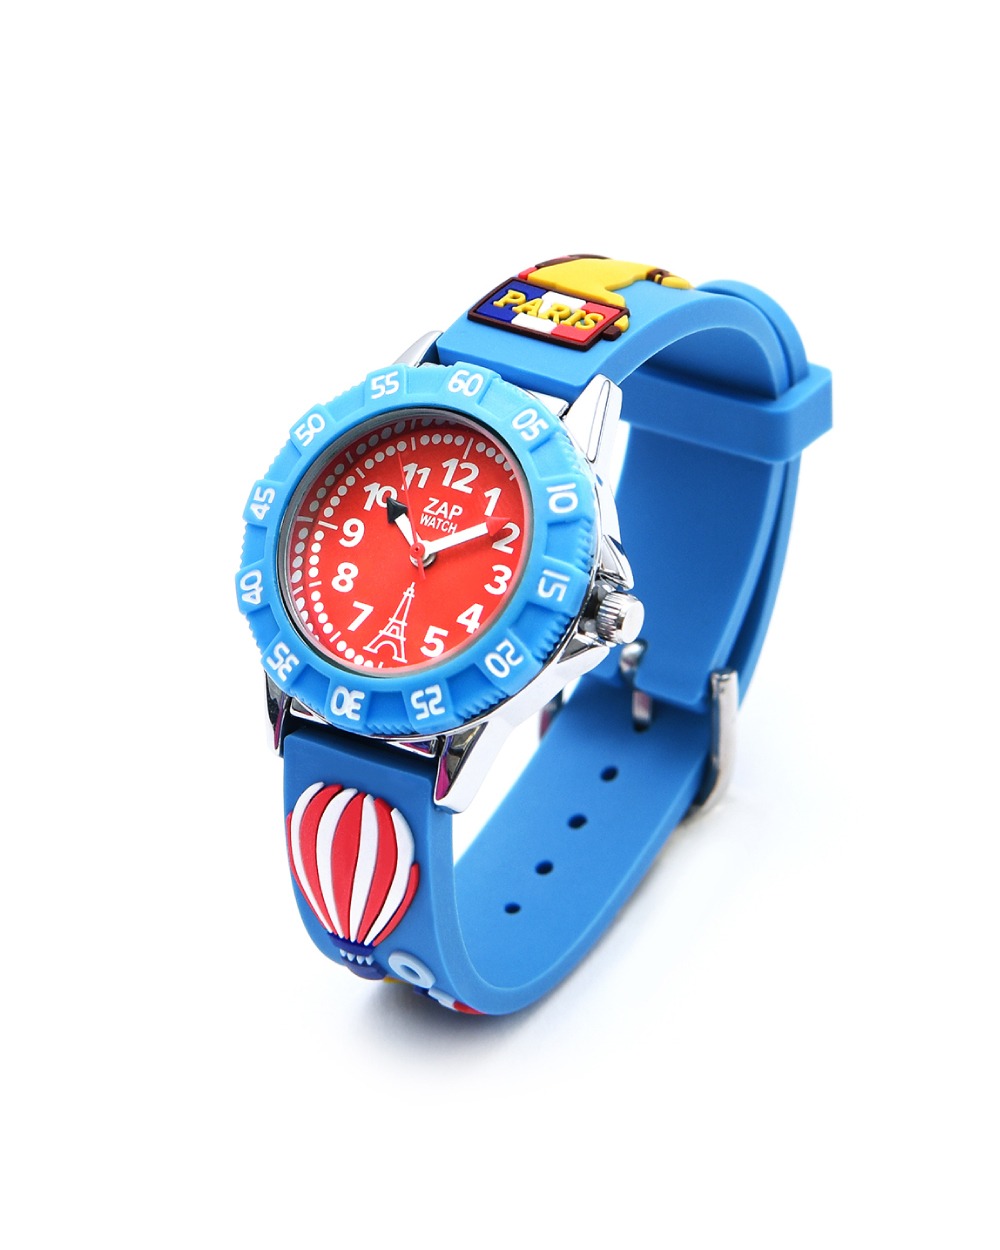 베이비와치 프랑스 아동손목시계 - ZAP Bonjour Paris Blue (봉쥬르 파리 블루)